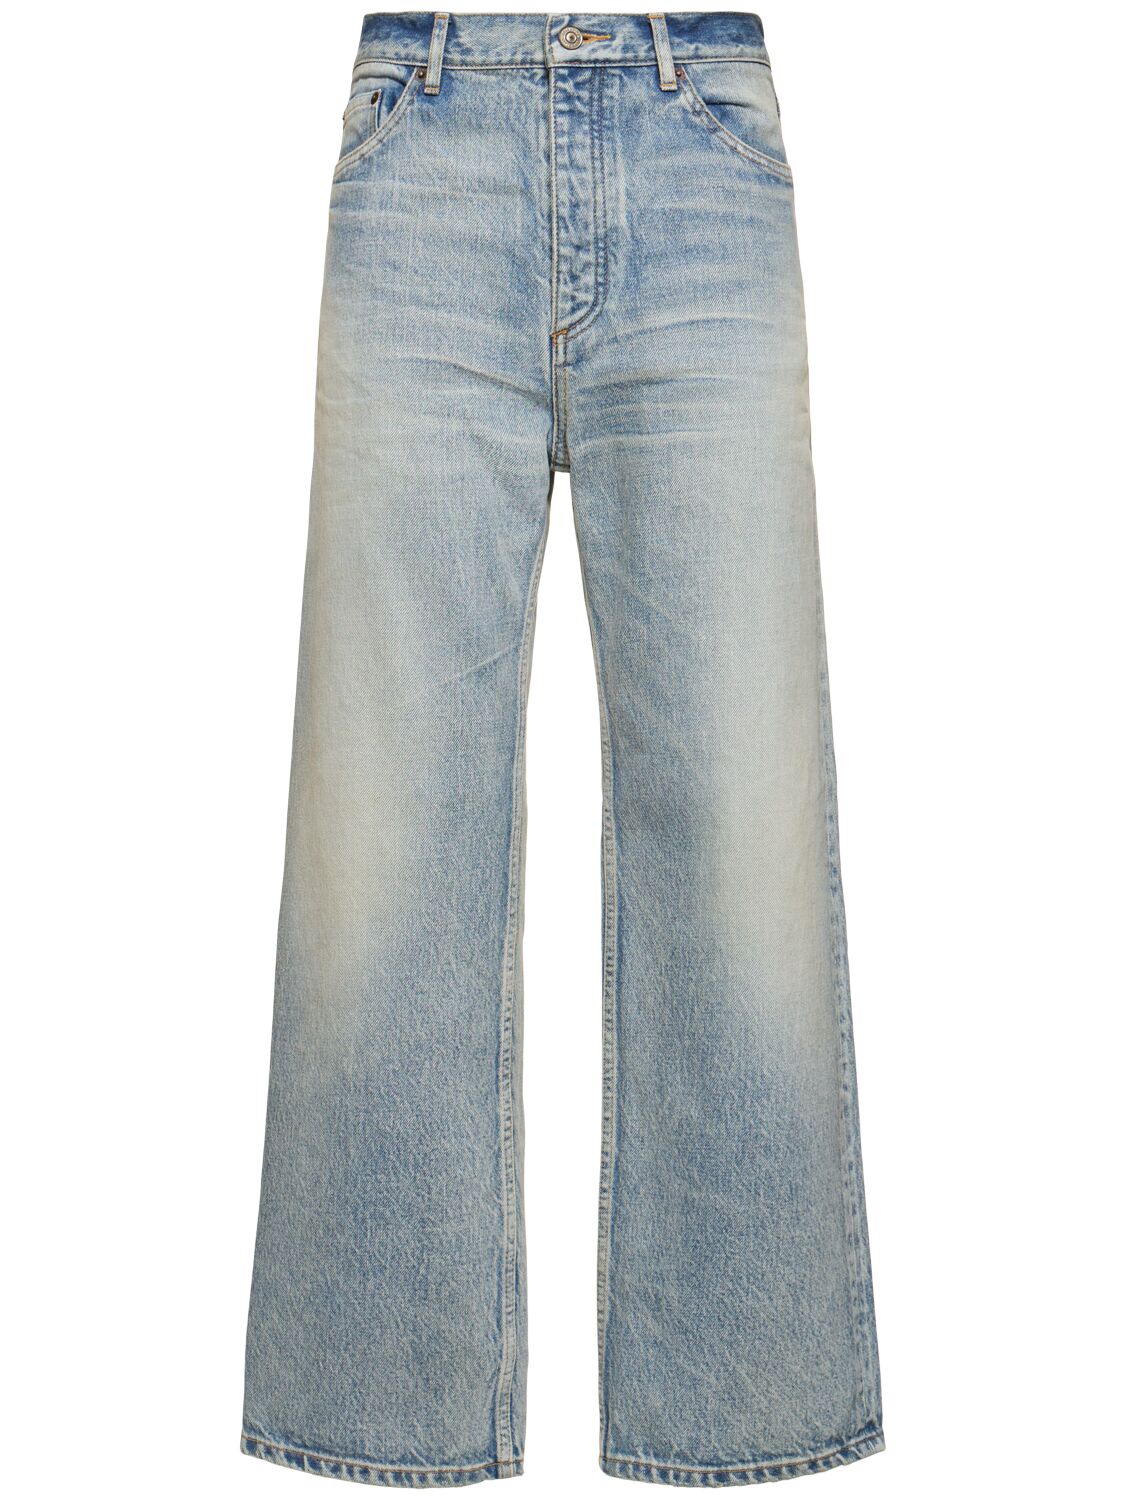 Ankle Cut Denim Jeans-Balenciaga 1